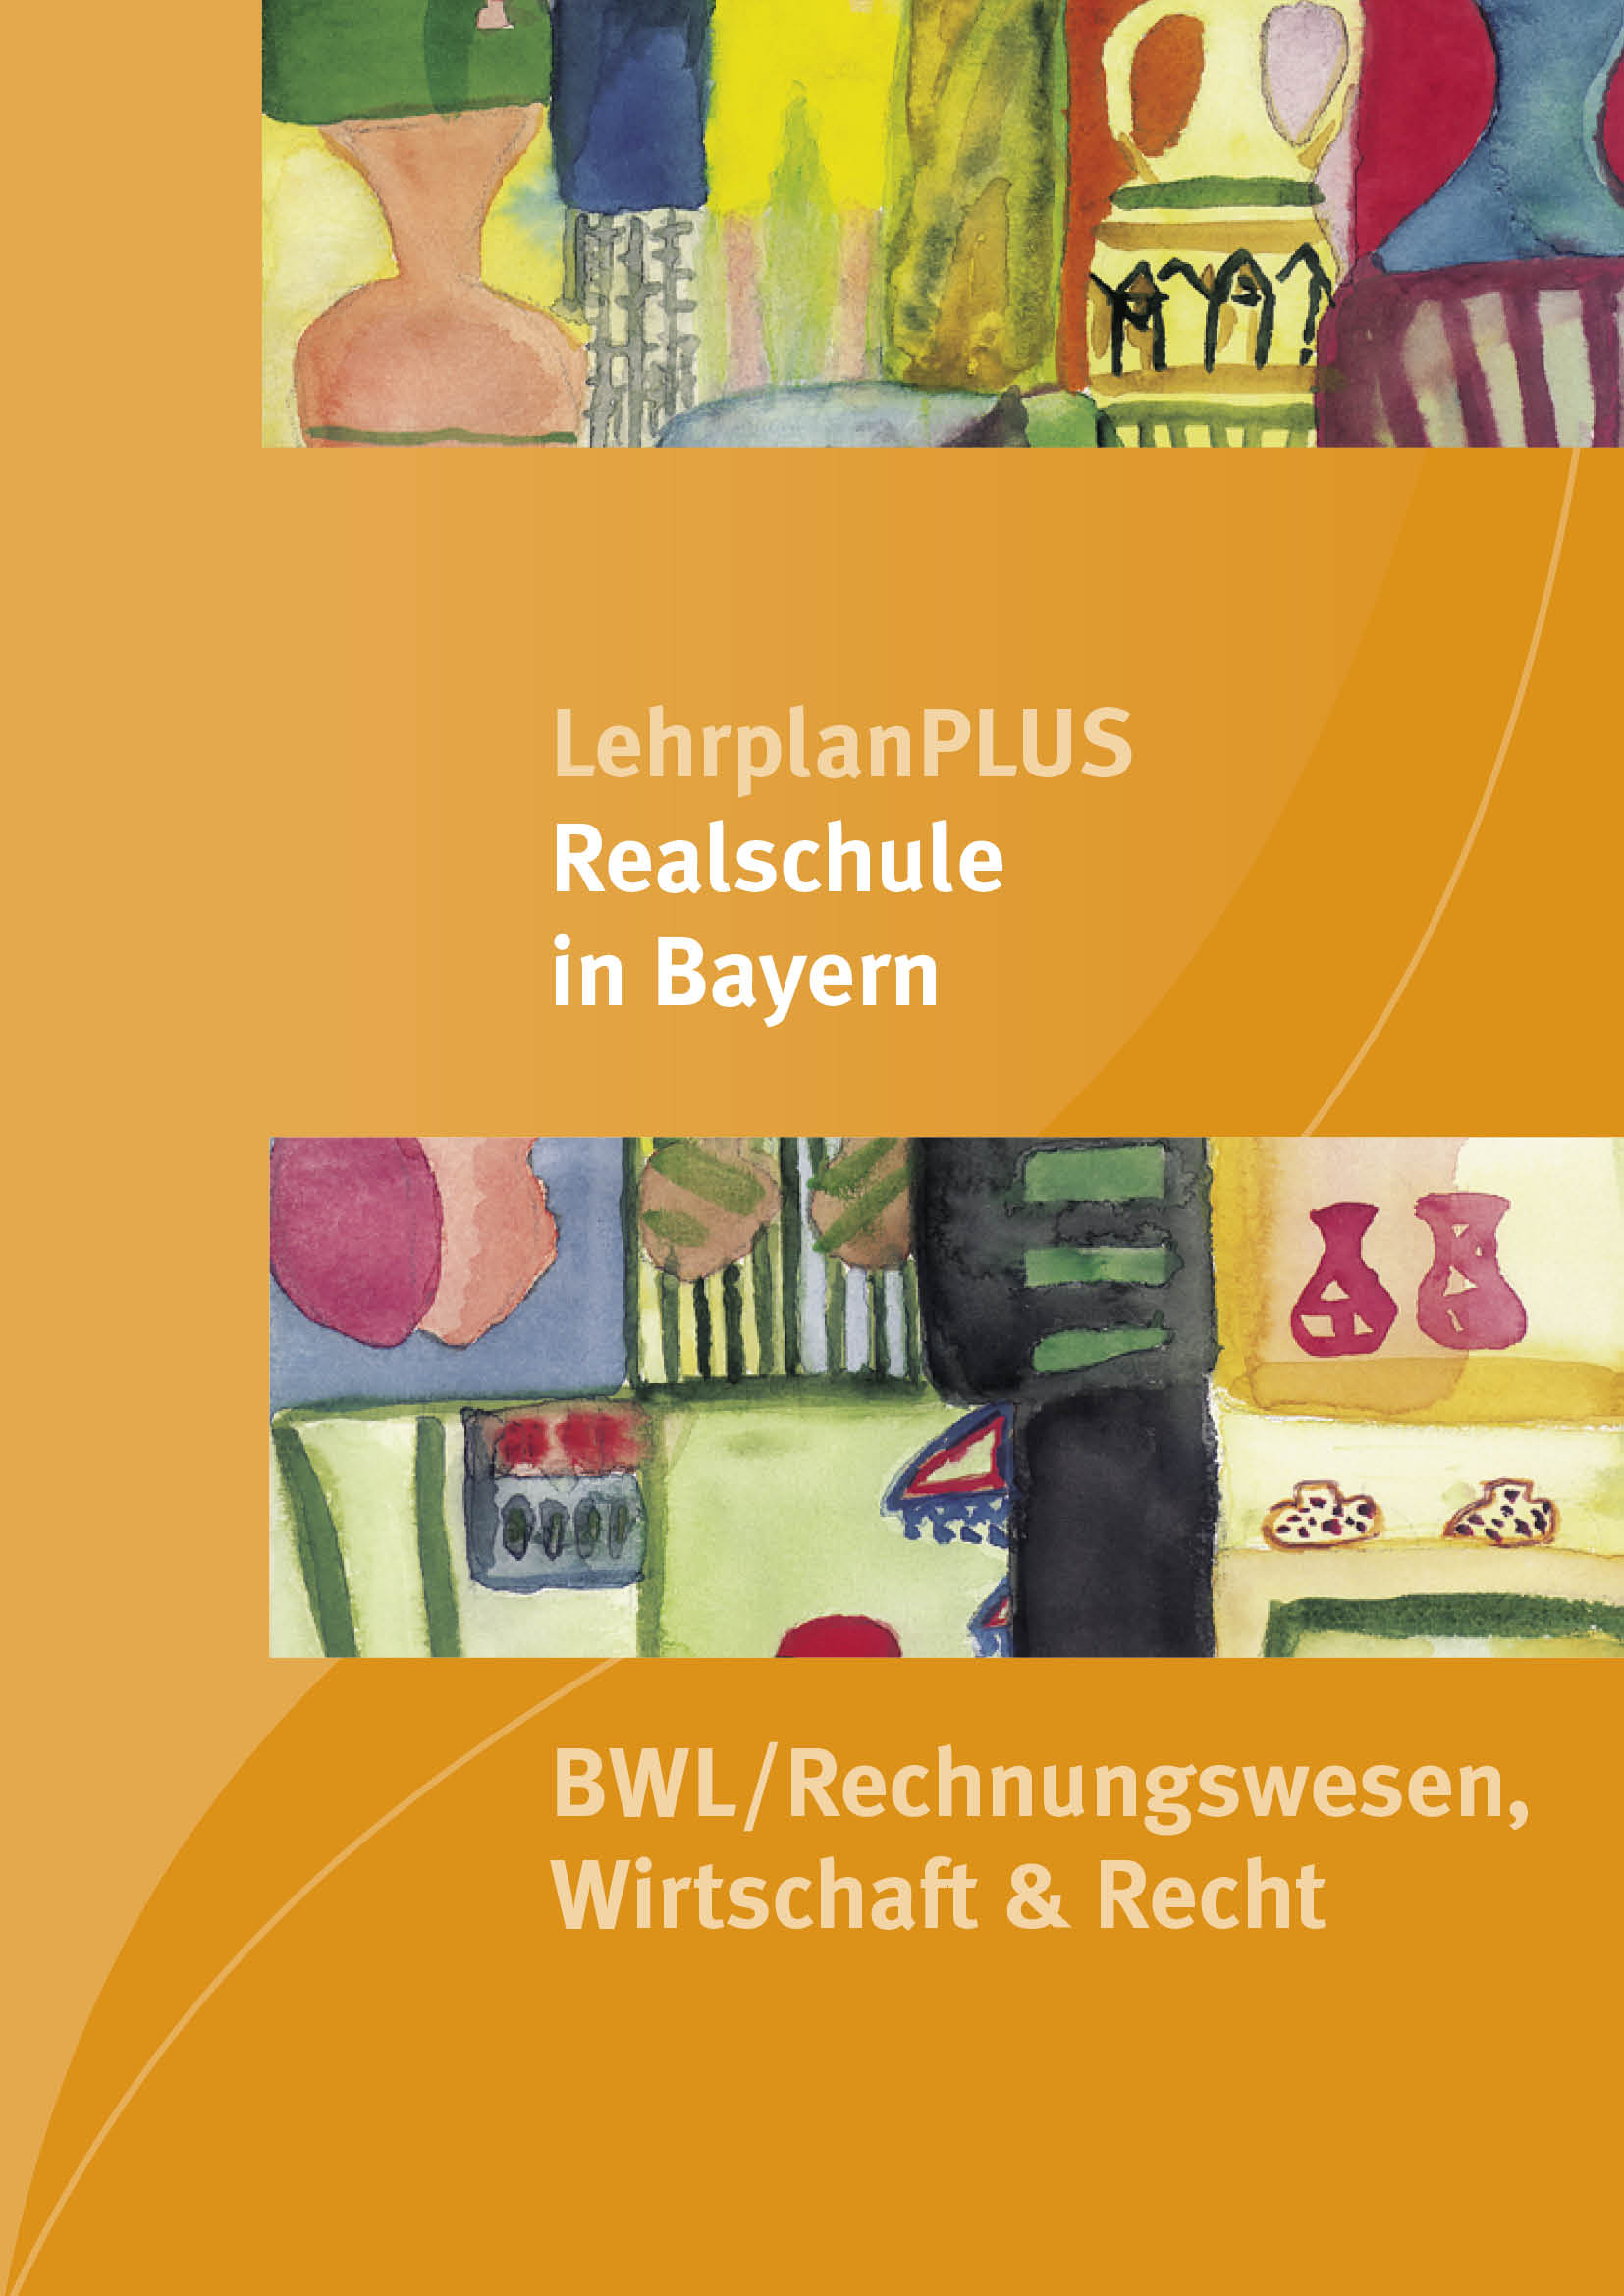 LehrplanPLUS Realschule in Bayern - BWL/Rechnungswesen, Wirtschaft & Recht